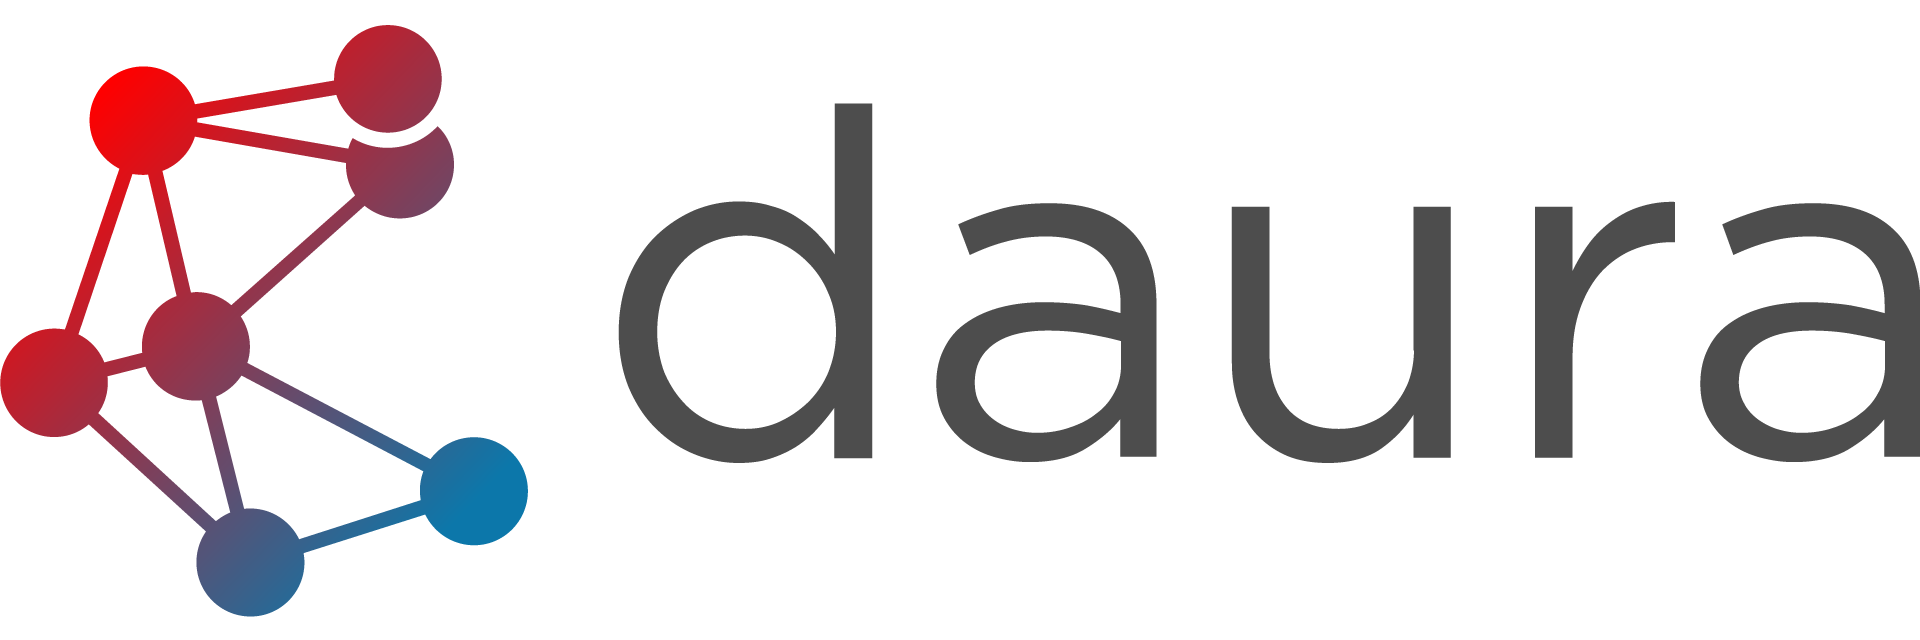 daura-logo-font-black-1